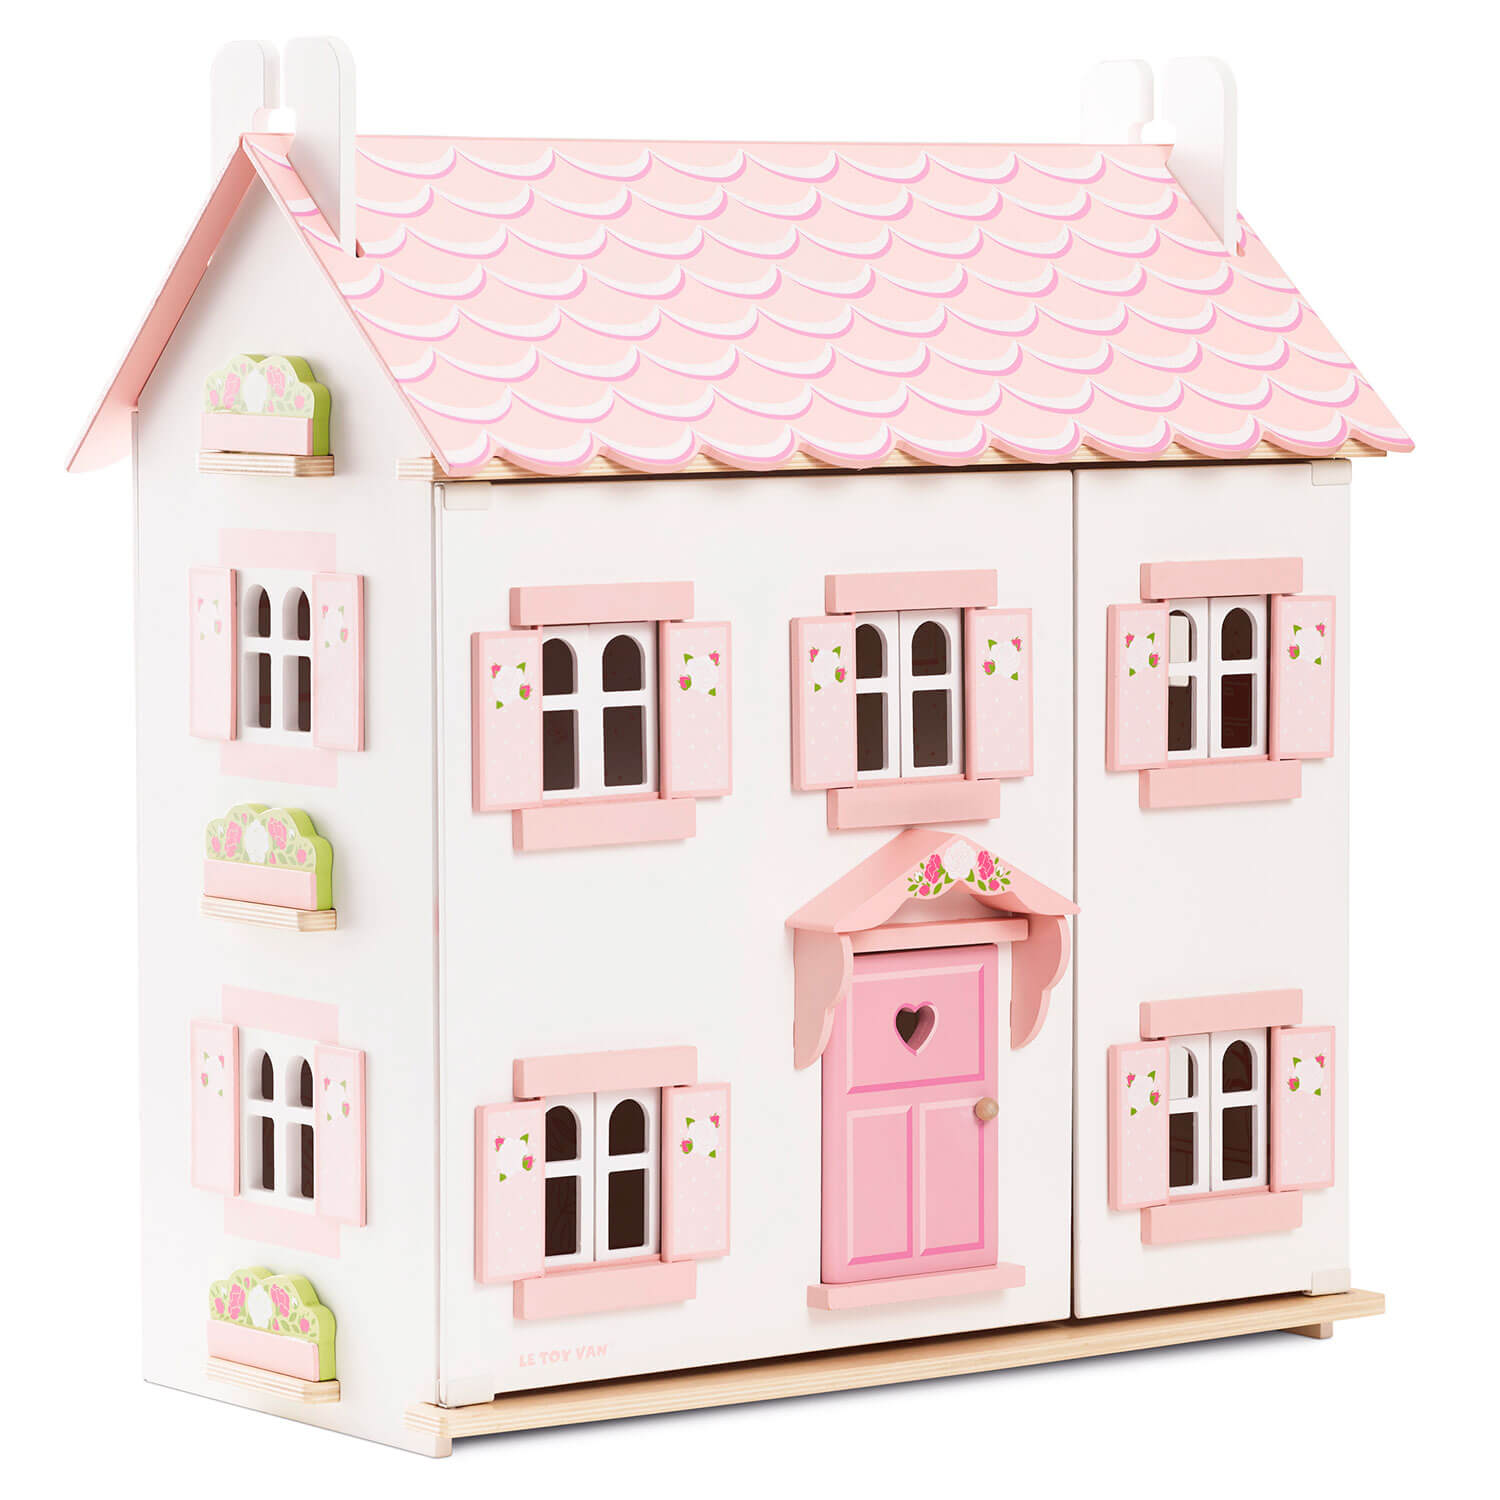 houten poppenhuis wit en roze Le Toy Van sophies doll house draait open roze luikjes vooraanzicht